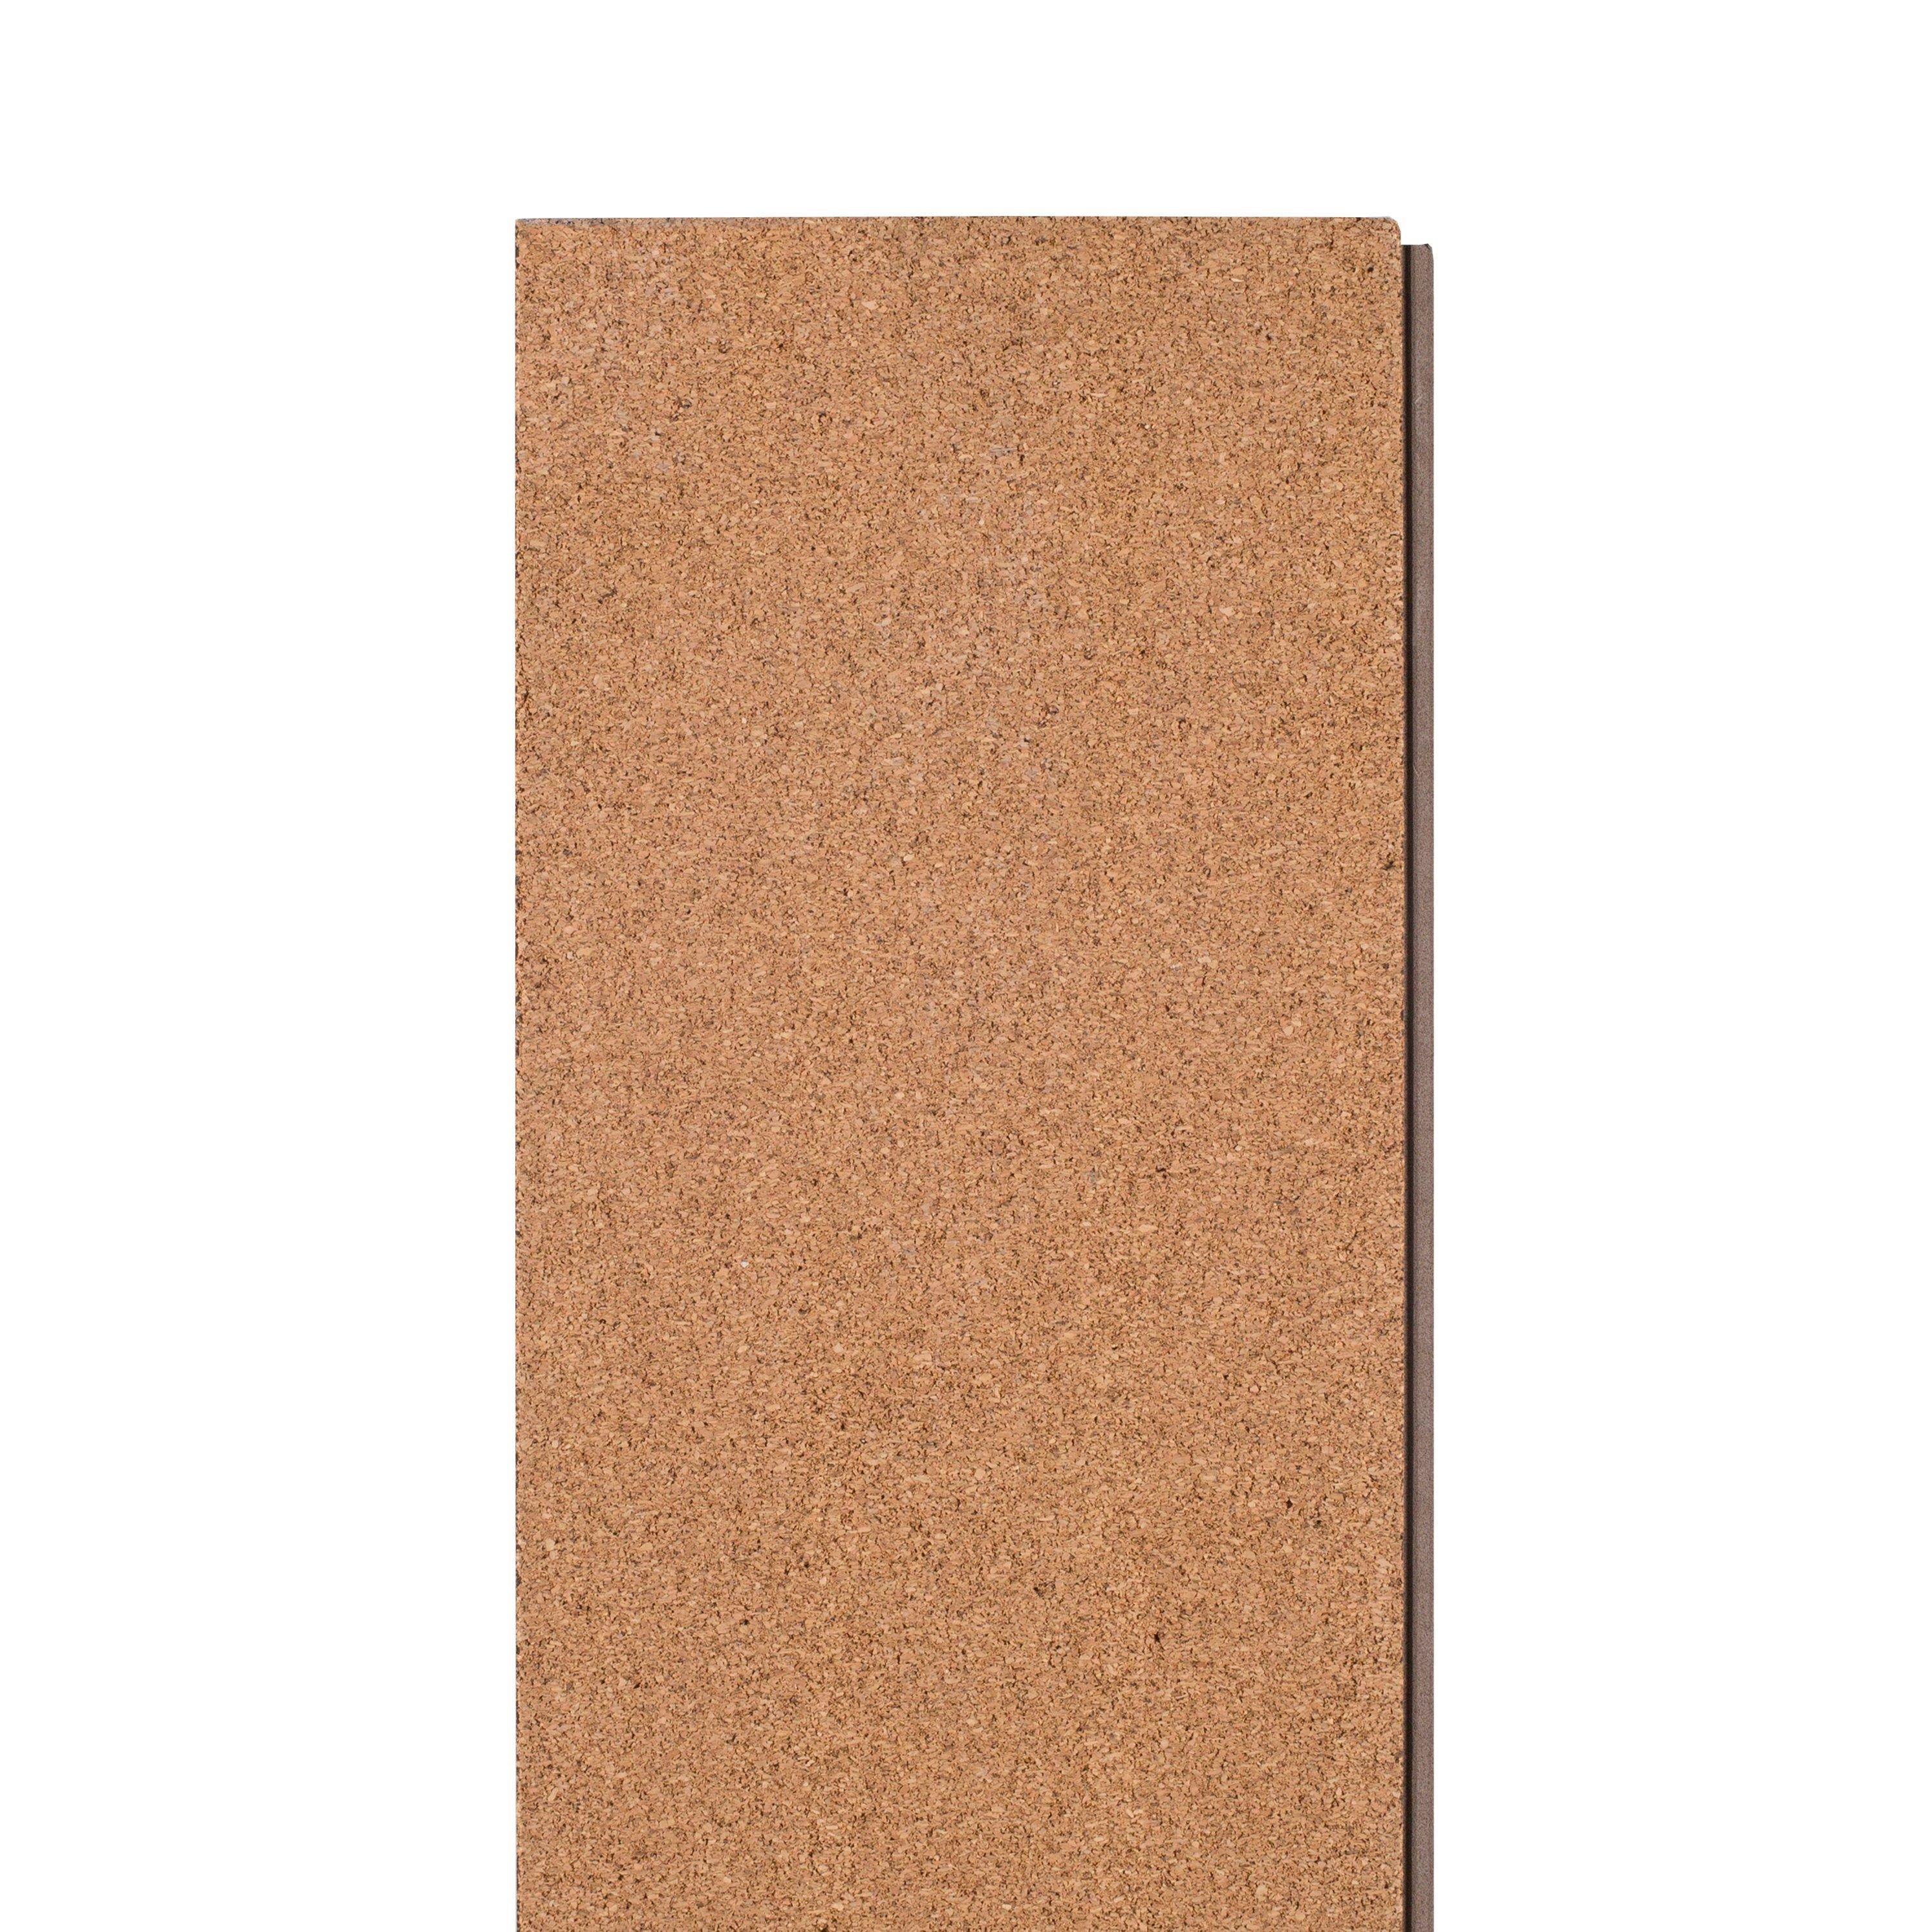 Riverstone Oak Rigid Core Luxury Vinyl Plank - Cork Back